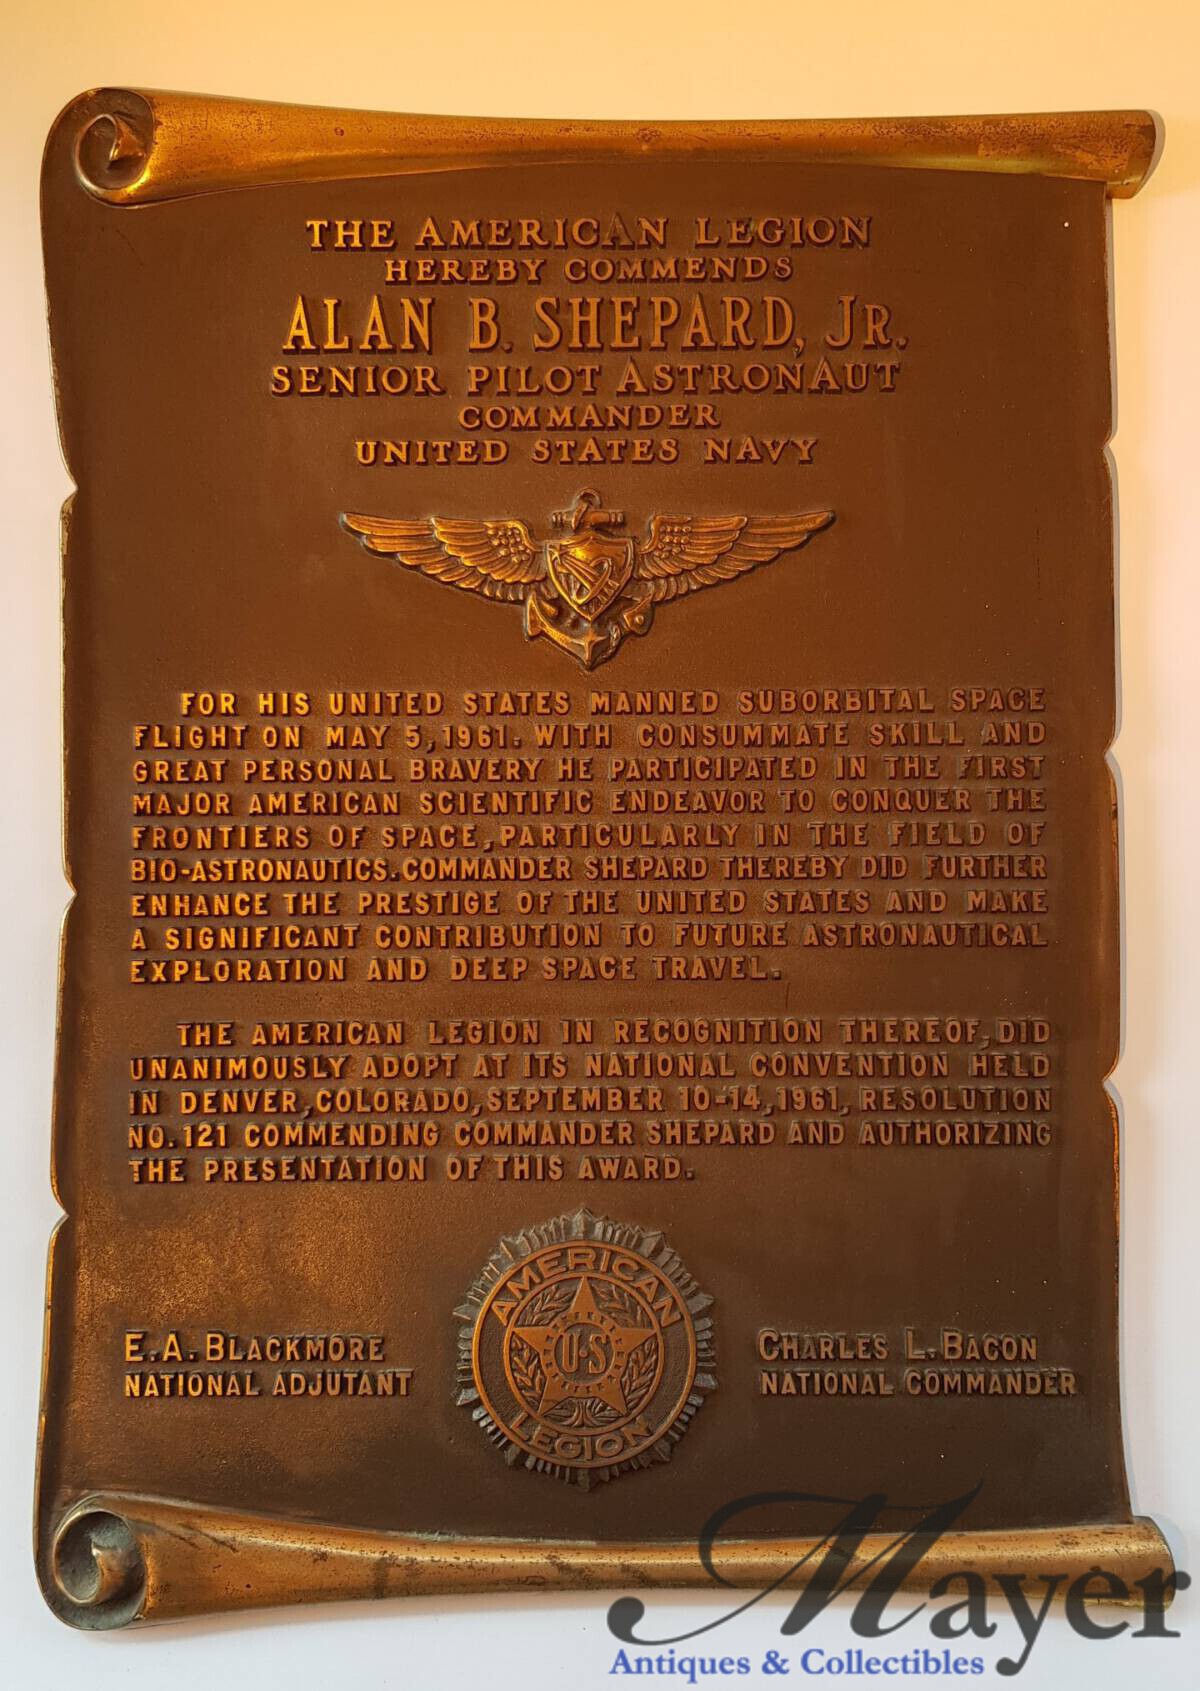 Alan Shepard memorabilia